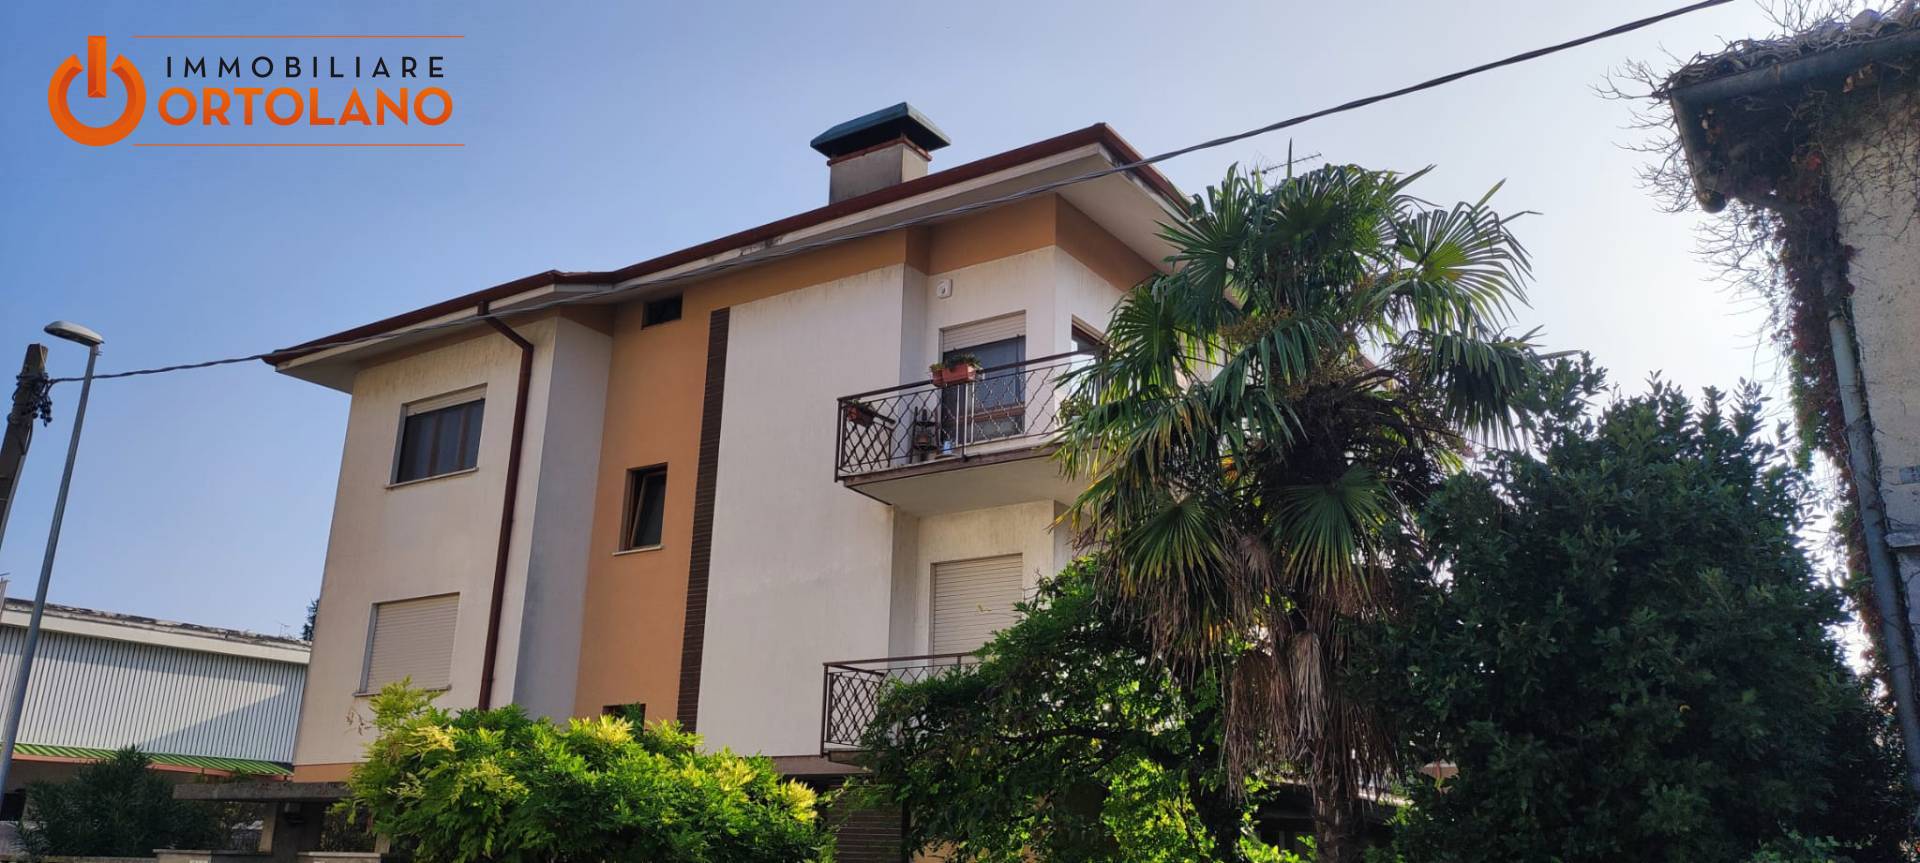 Appartamento in vendita a Staranzano, 5 locali, prezzo € 175.000 | PortaleAgenzieImmobiliari.it